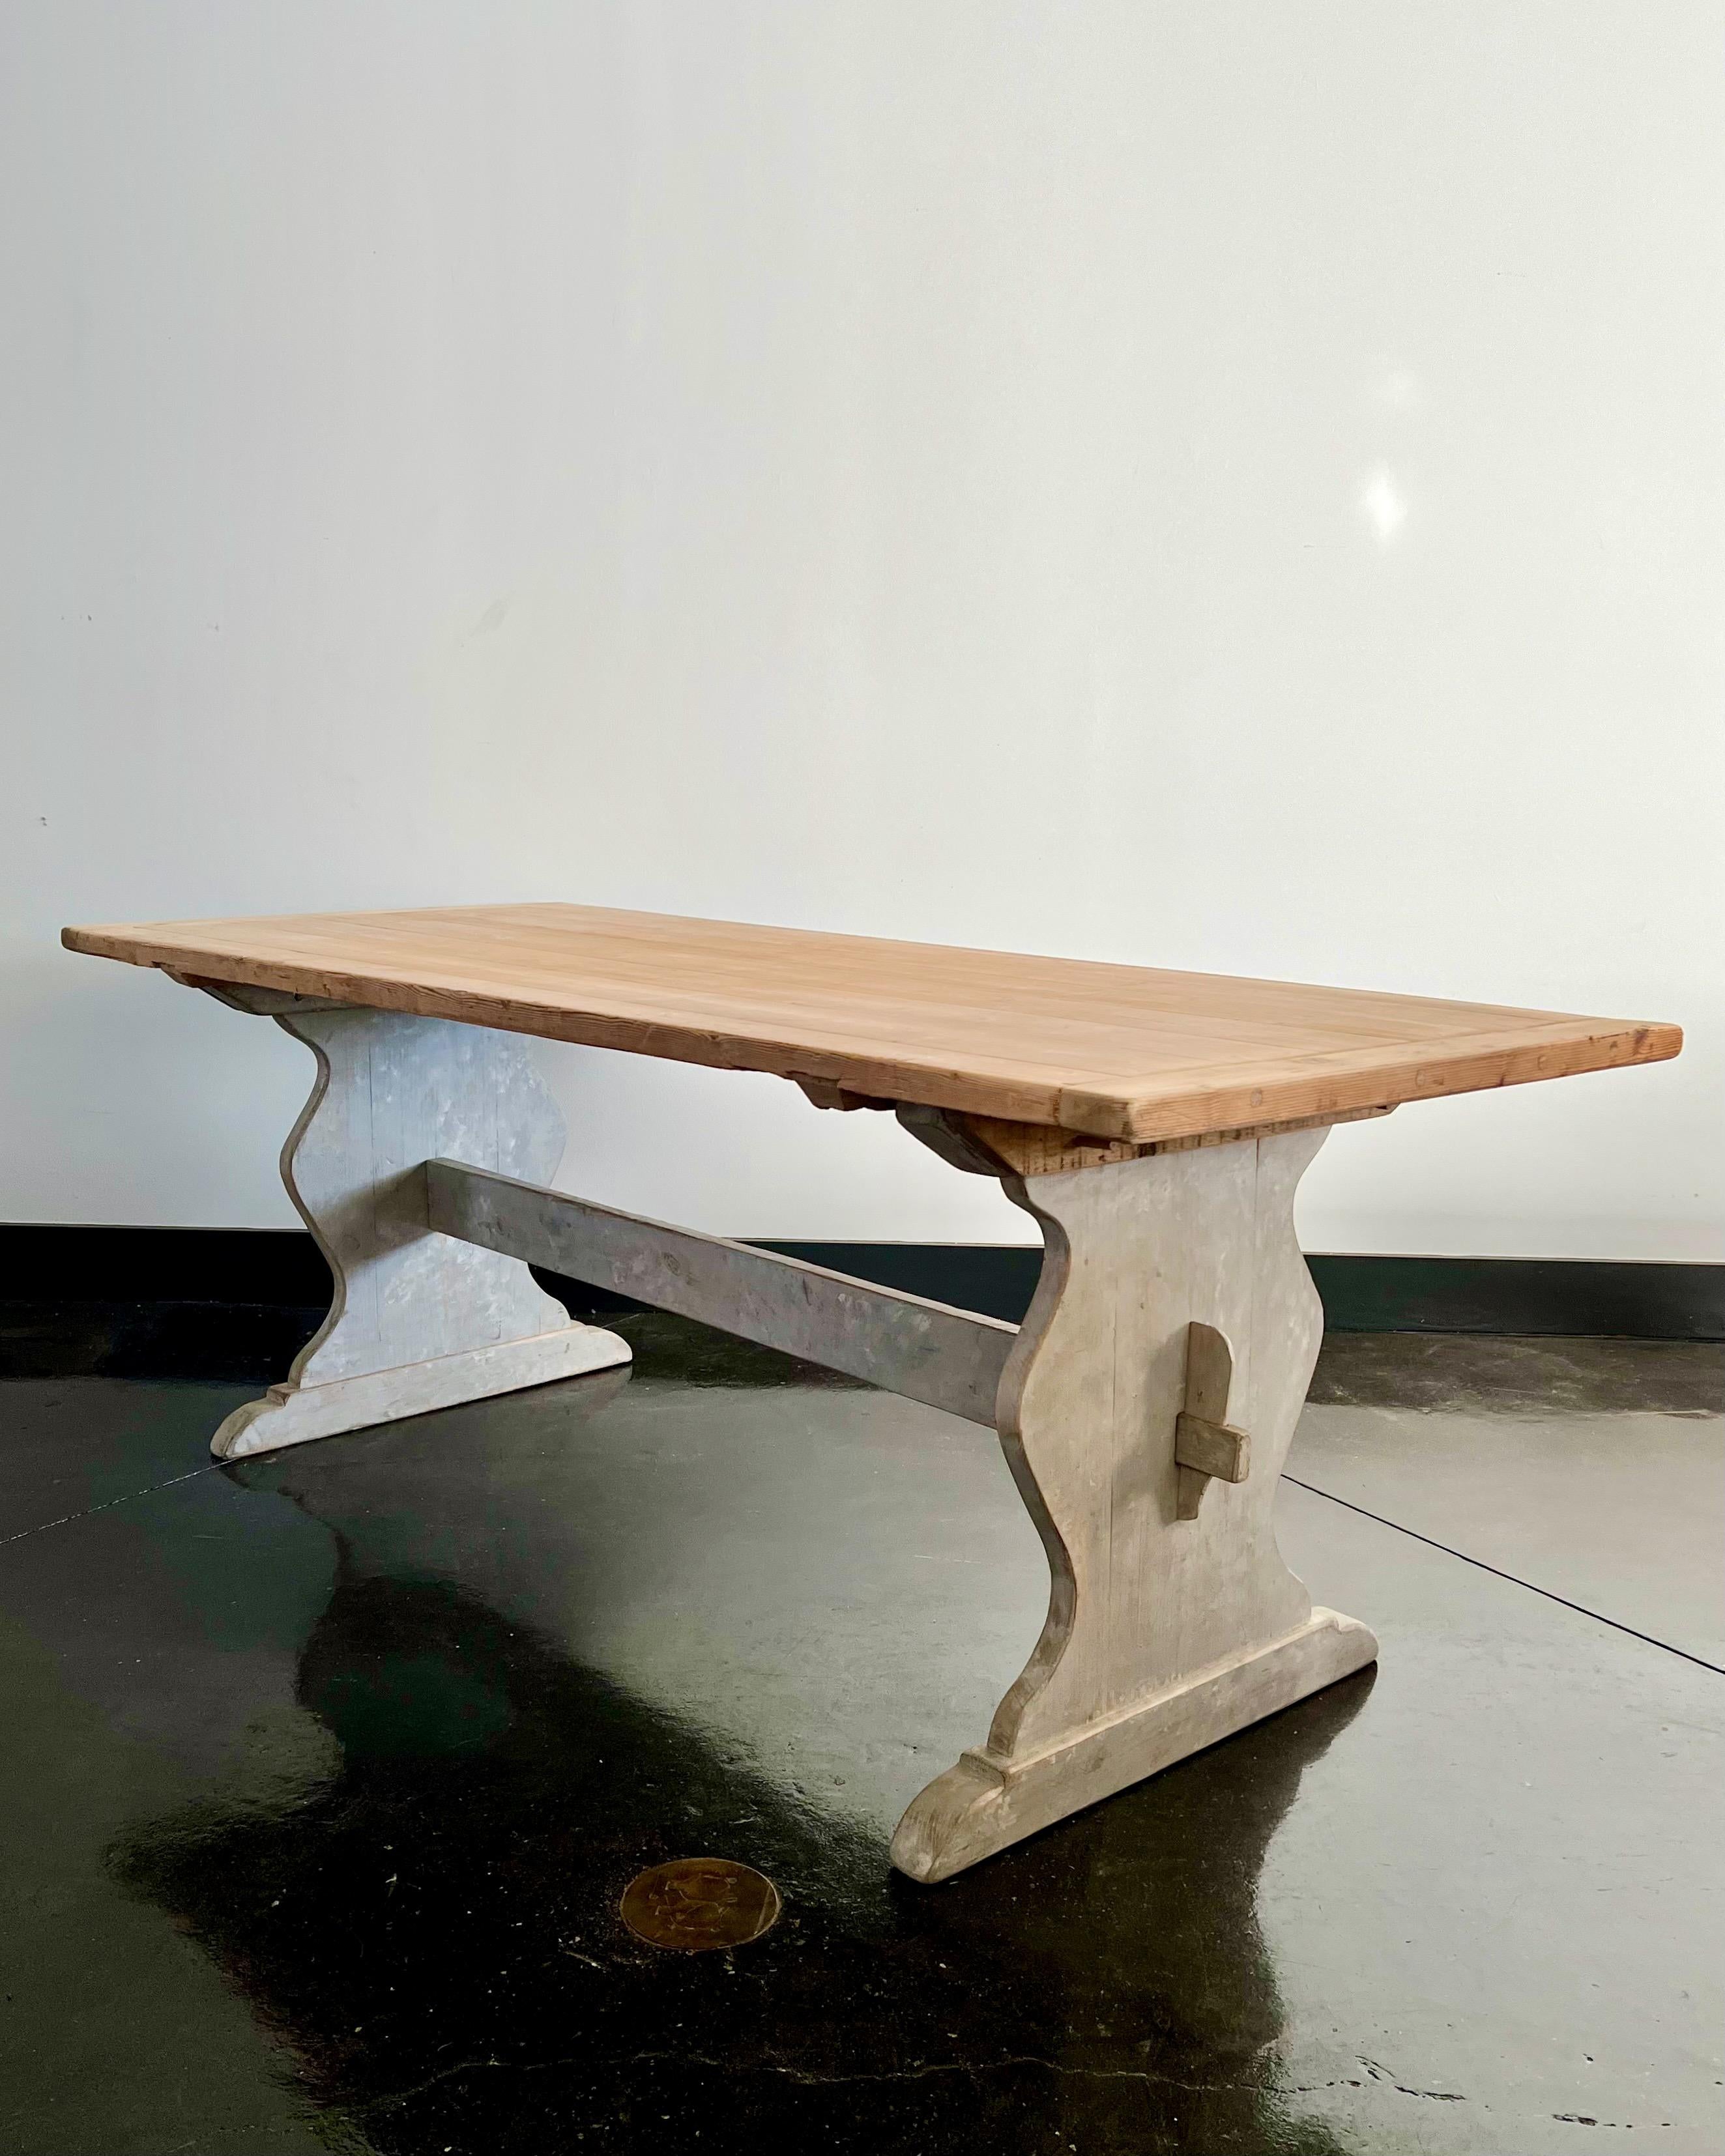 19th century Swedish trestle table in style in “Allmogestil,